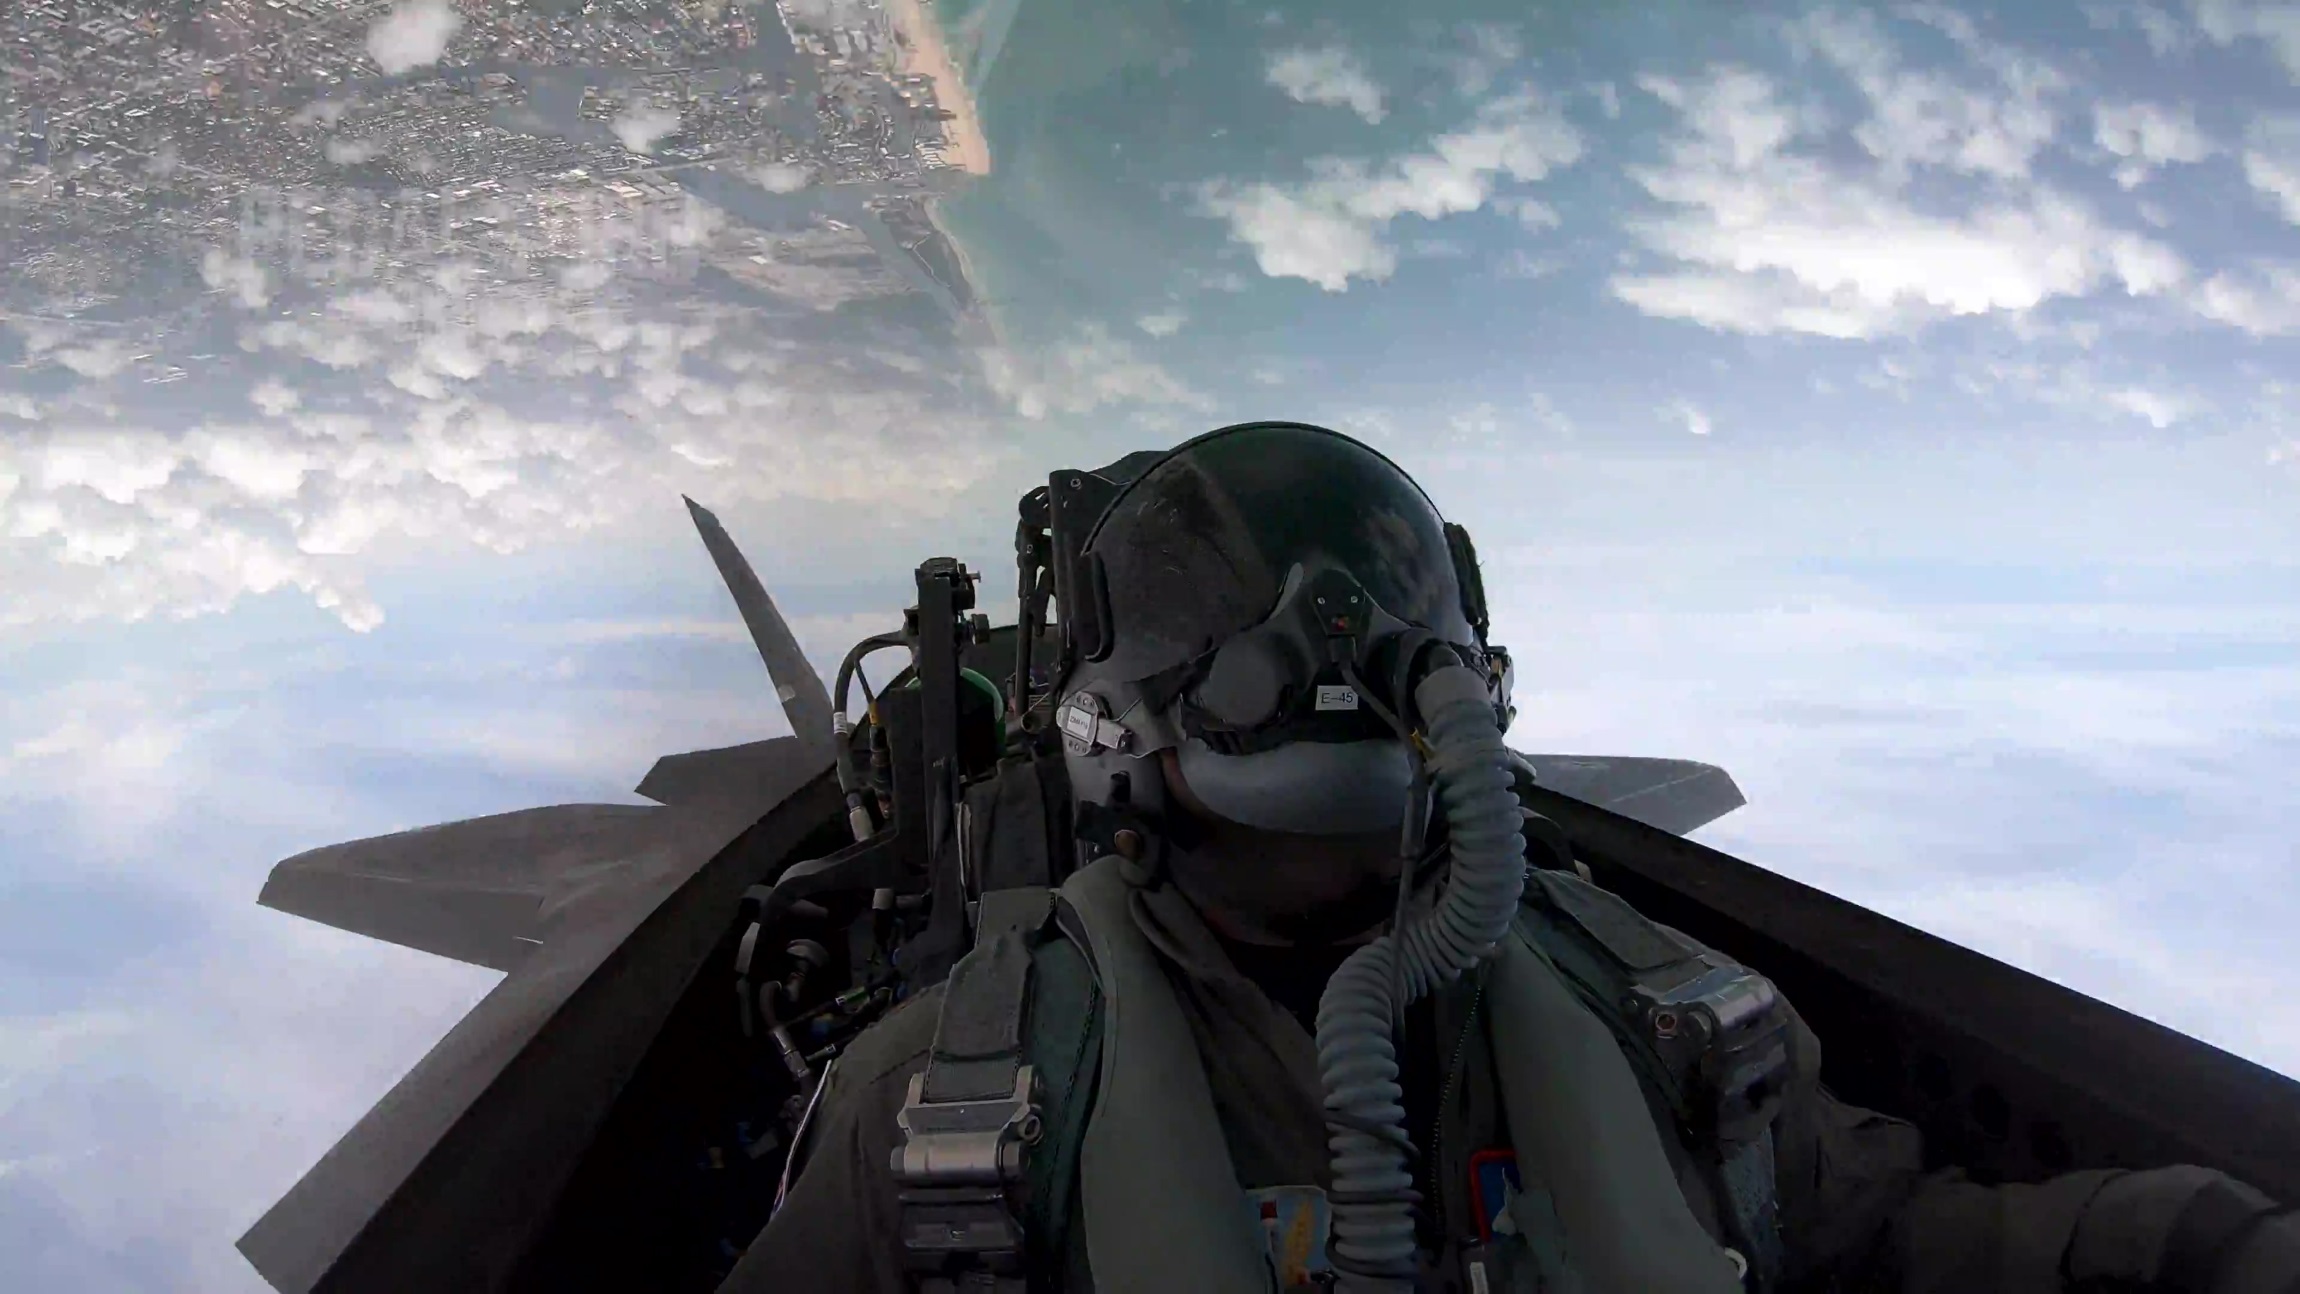 Με τα μάτια του αετού: Εντυπωσιακό βίντεο πτήσης από το cockpit ενός F-15 (video)